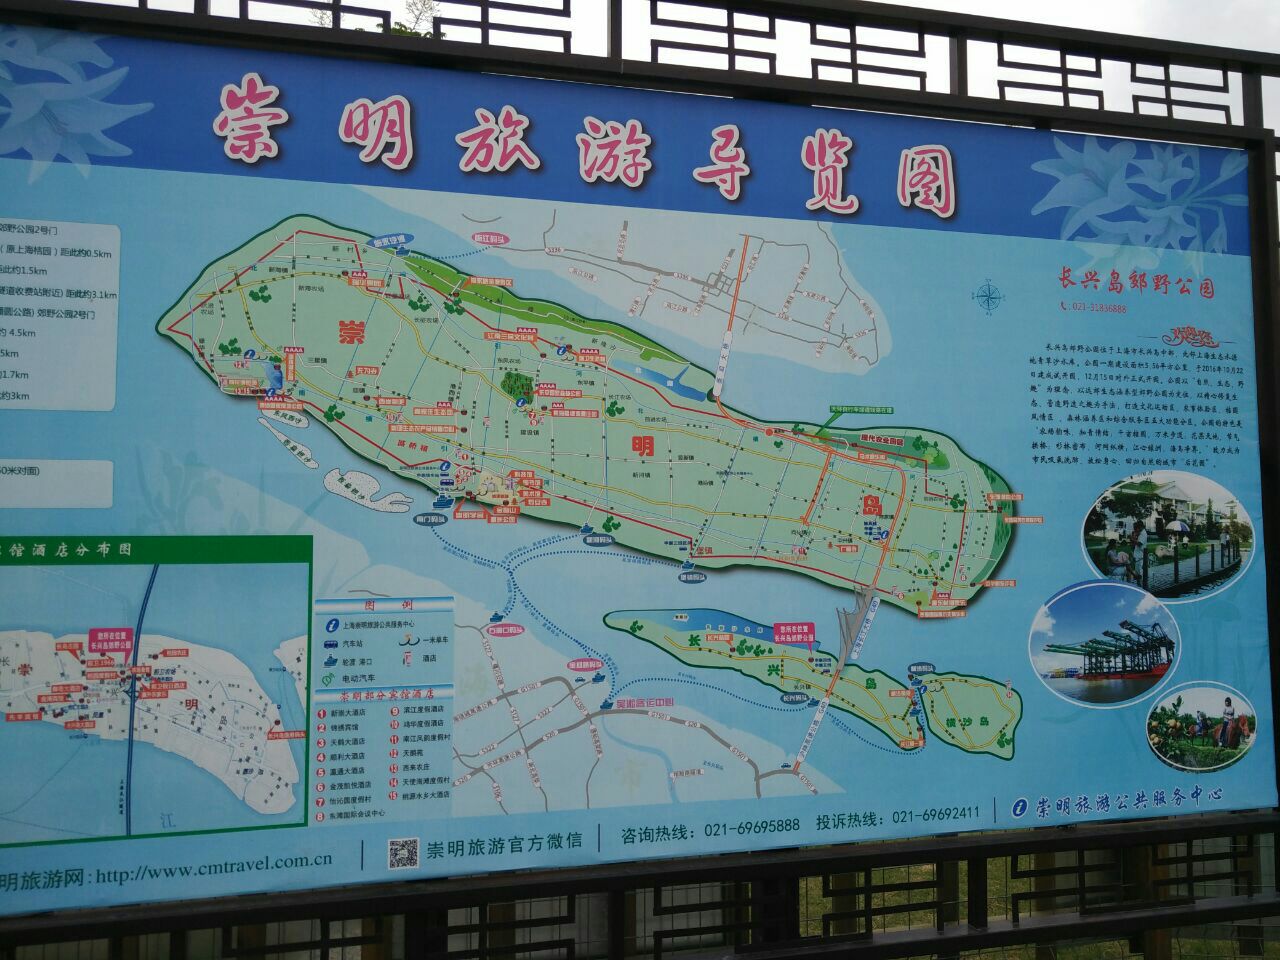 【携程攻略】崇明区长兴岛郊野公园景点,这个公园非常